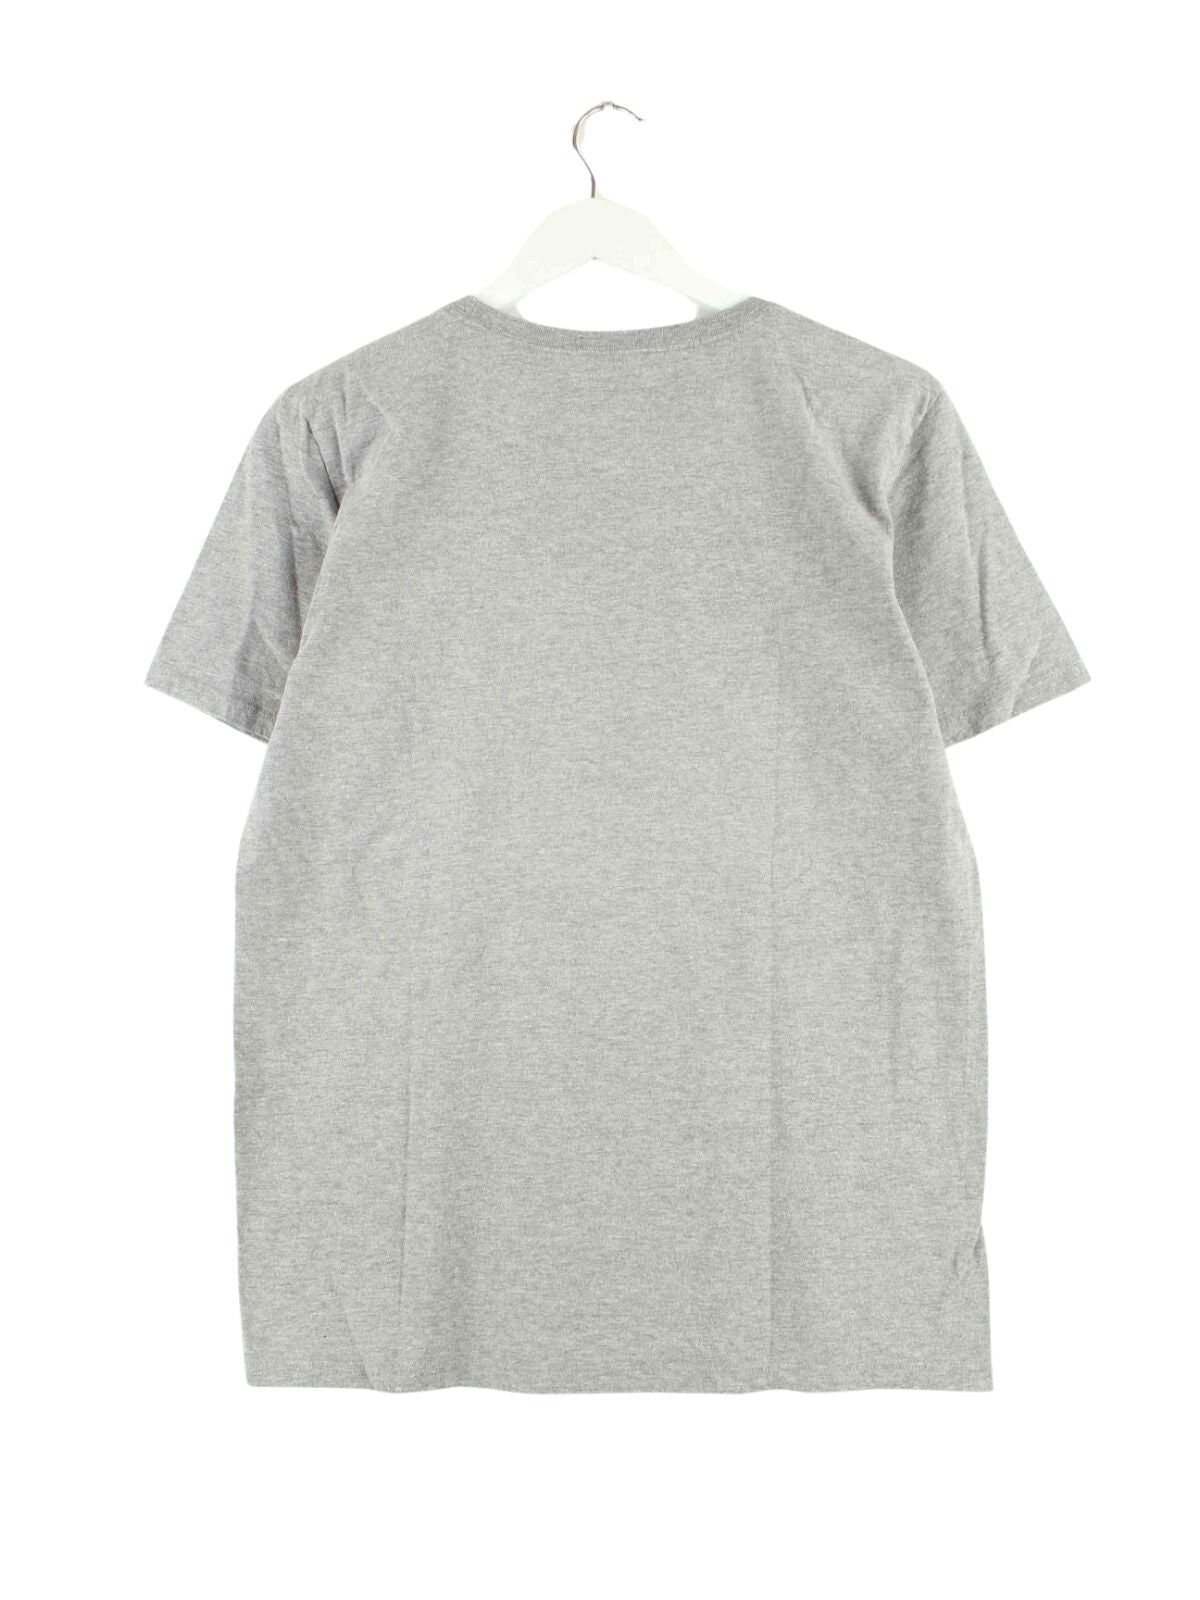 Nike Print T-Shirt Grau S (back image)